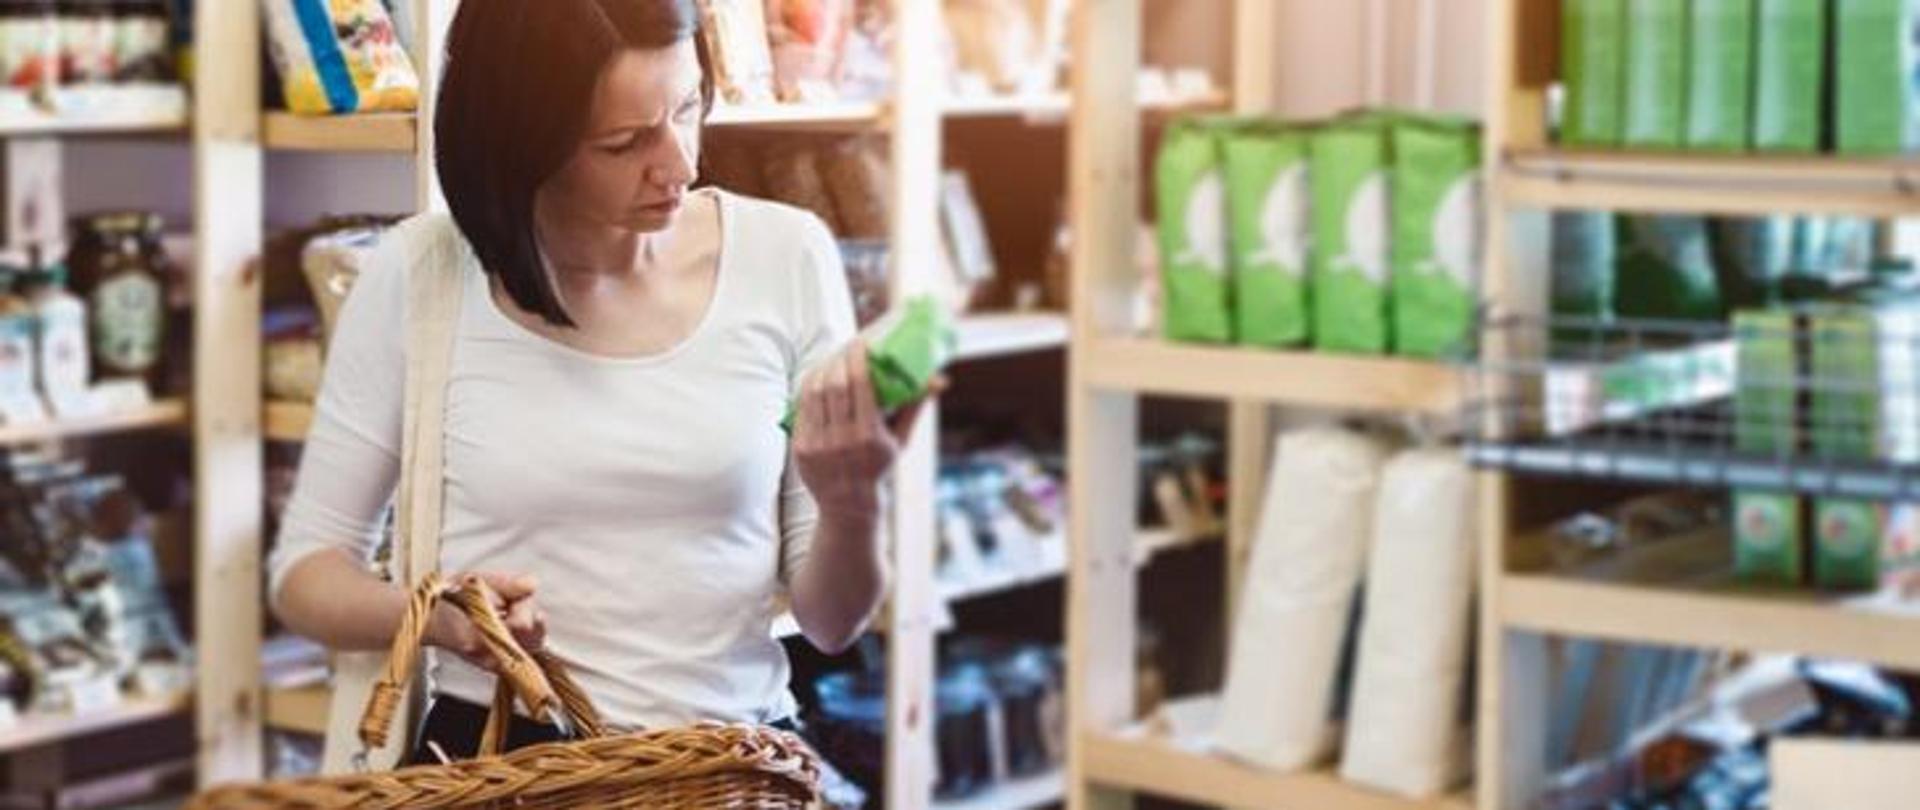 Na zdjęciu widoczna jest kobieta trzymająca koszyk wiklinowy oraz produkt sklepowy, na który zwrócony jest jej wzrok. W tle znajdują się półki sklepowe.